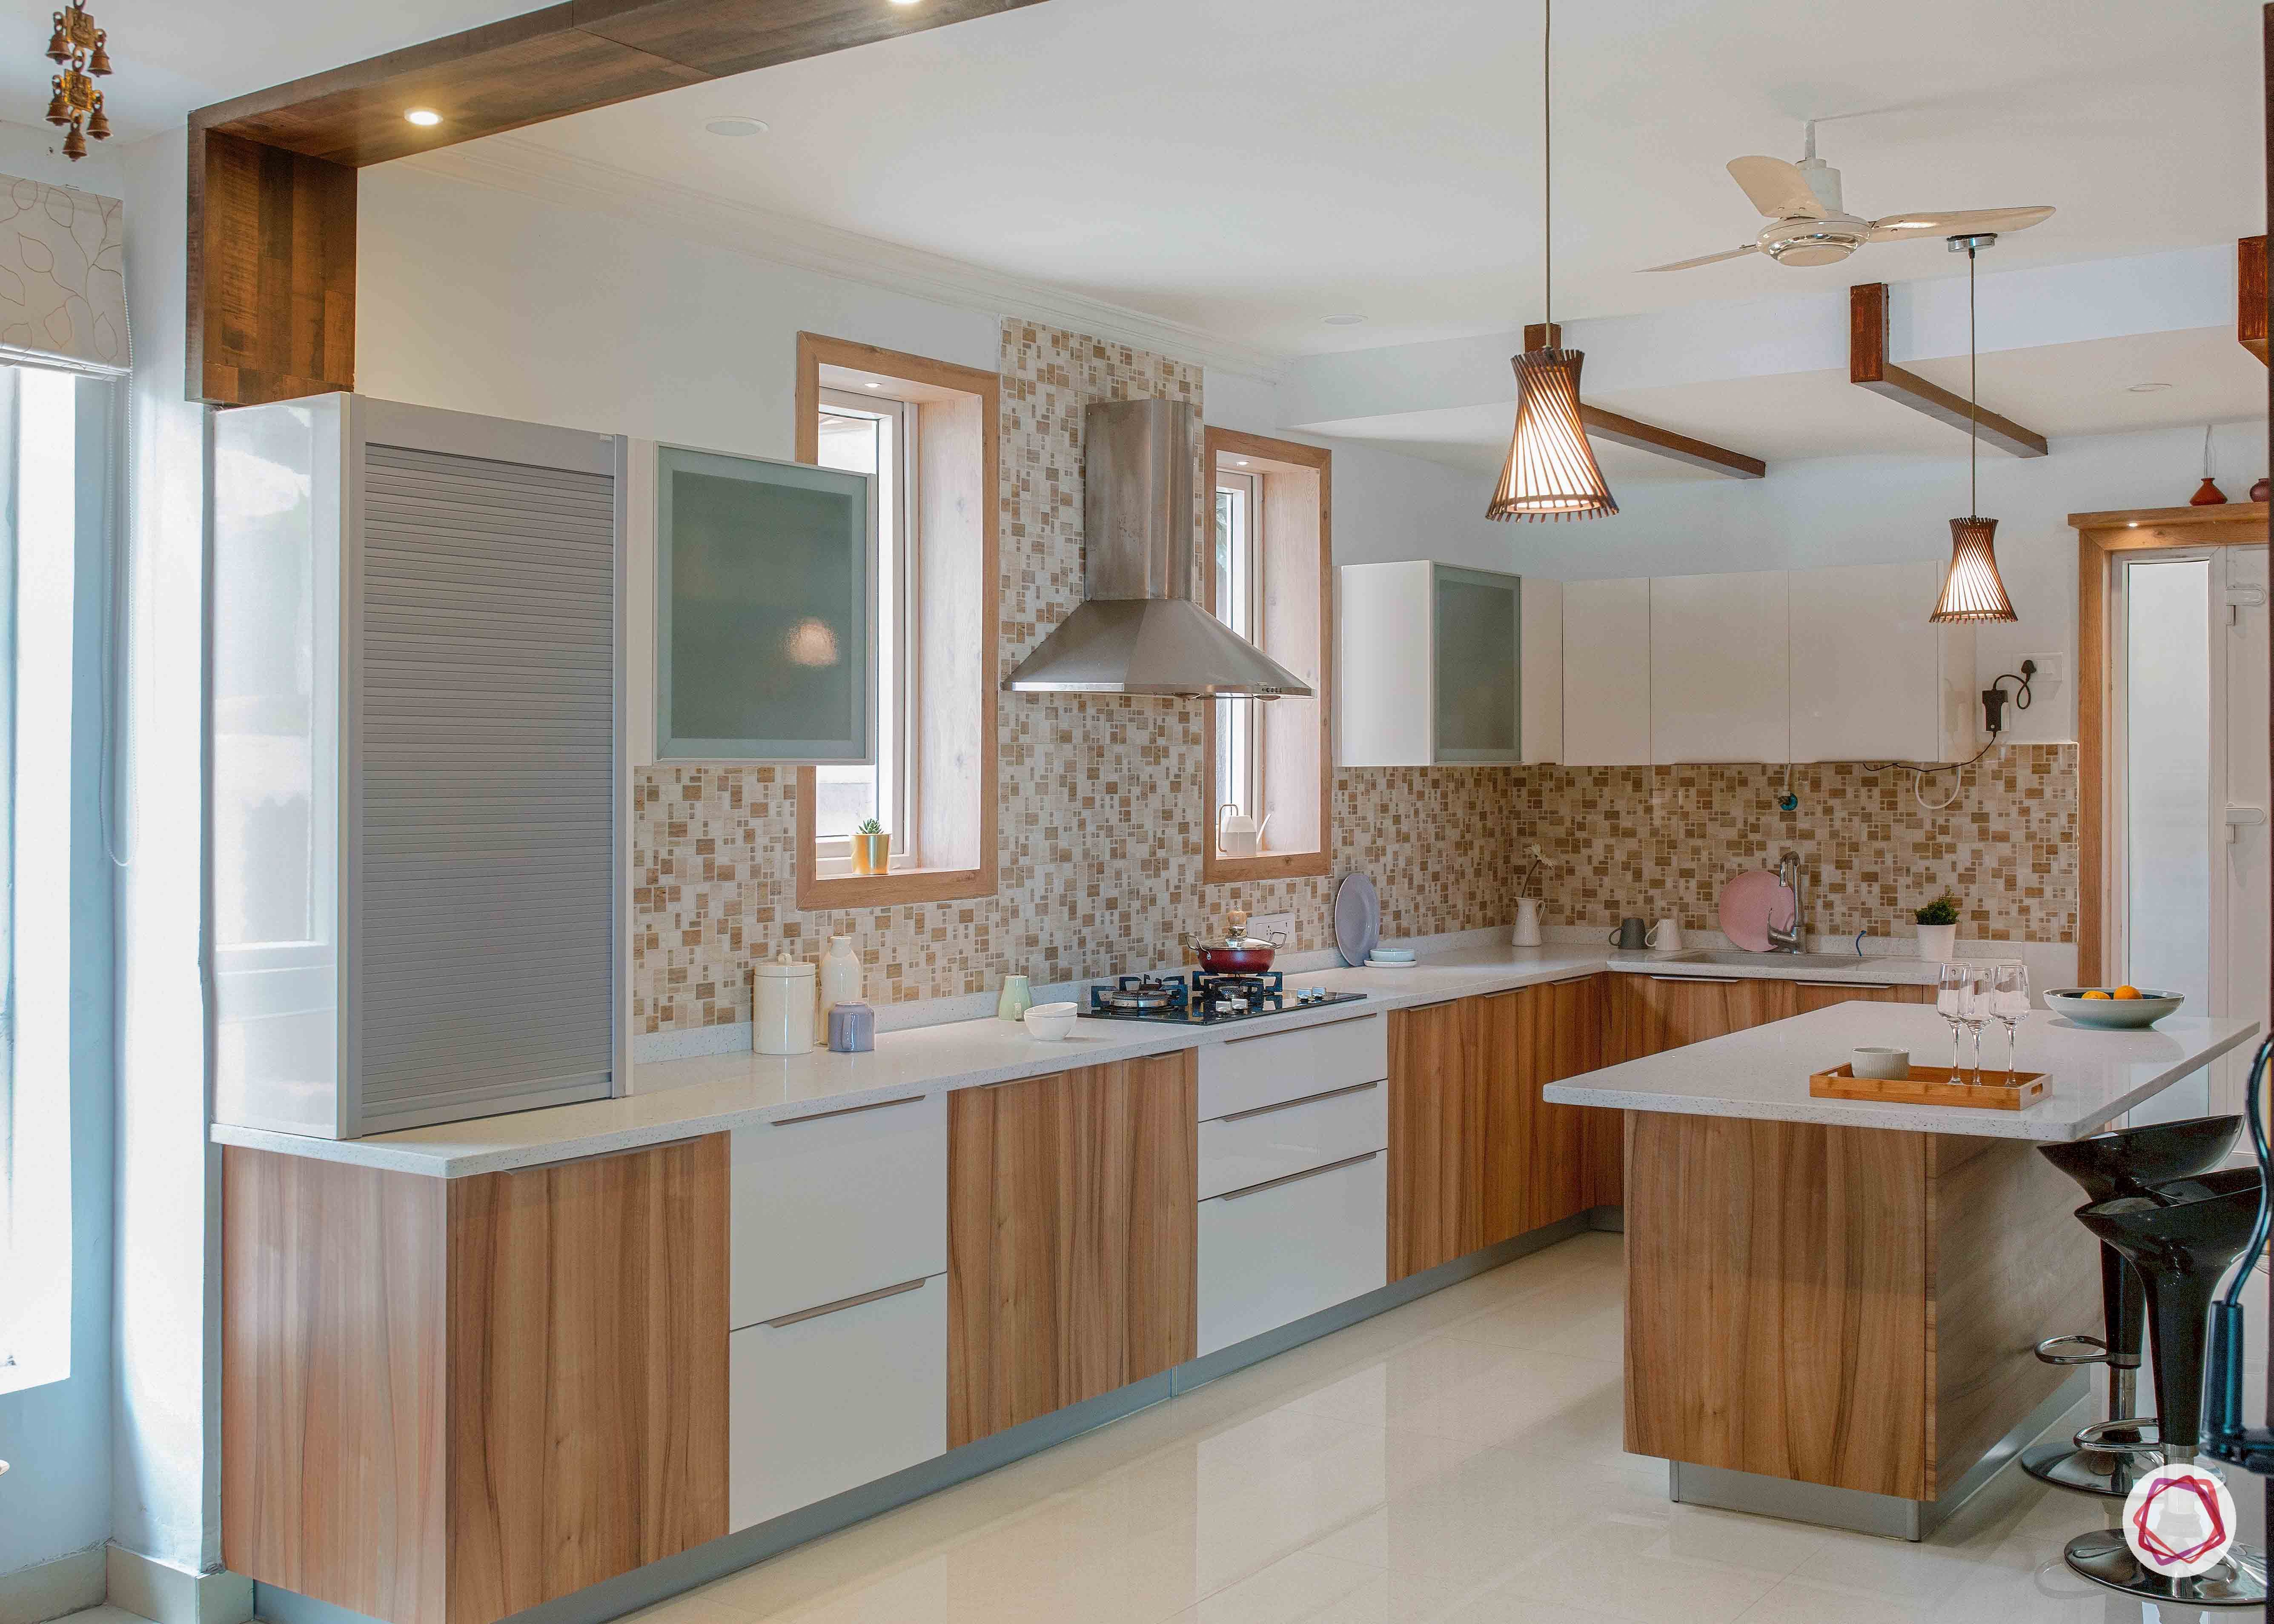 colour schemes for your kitchen-wooden kitchen designs-island kitchen designs